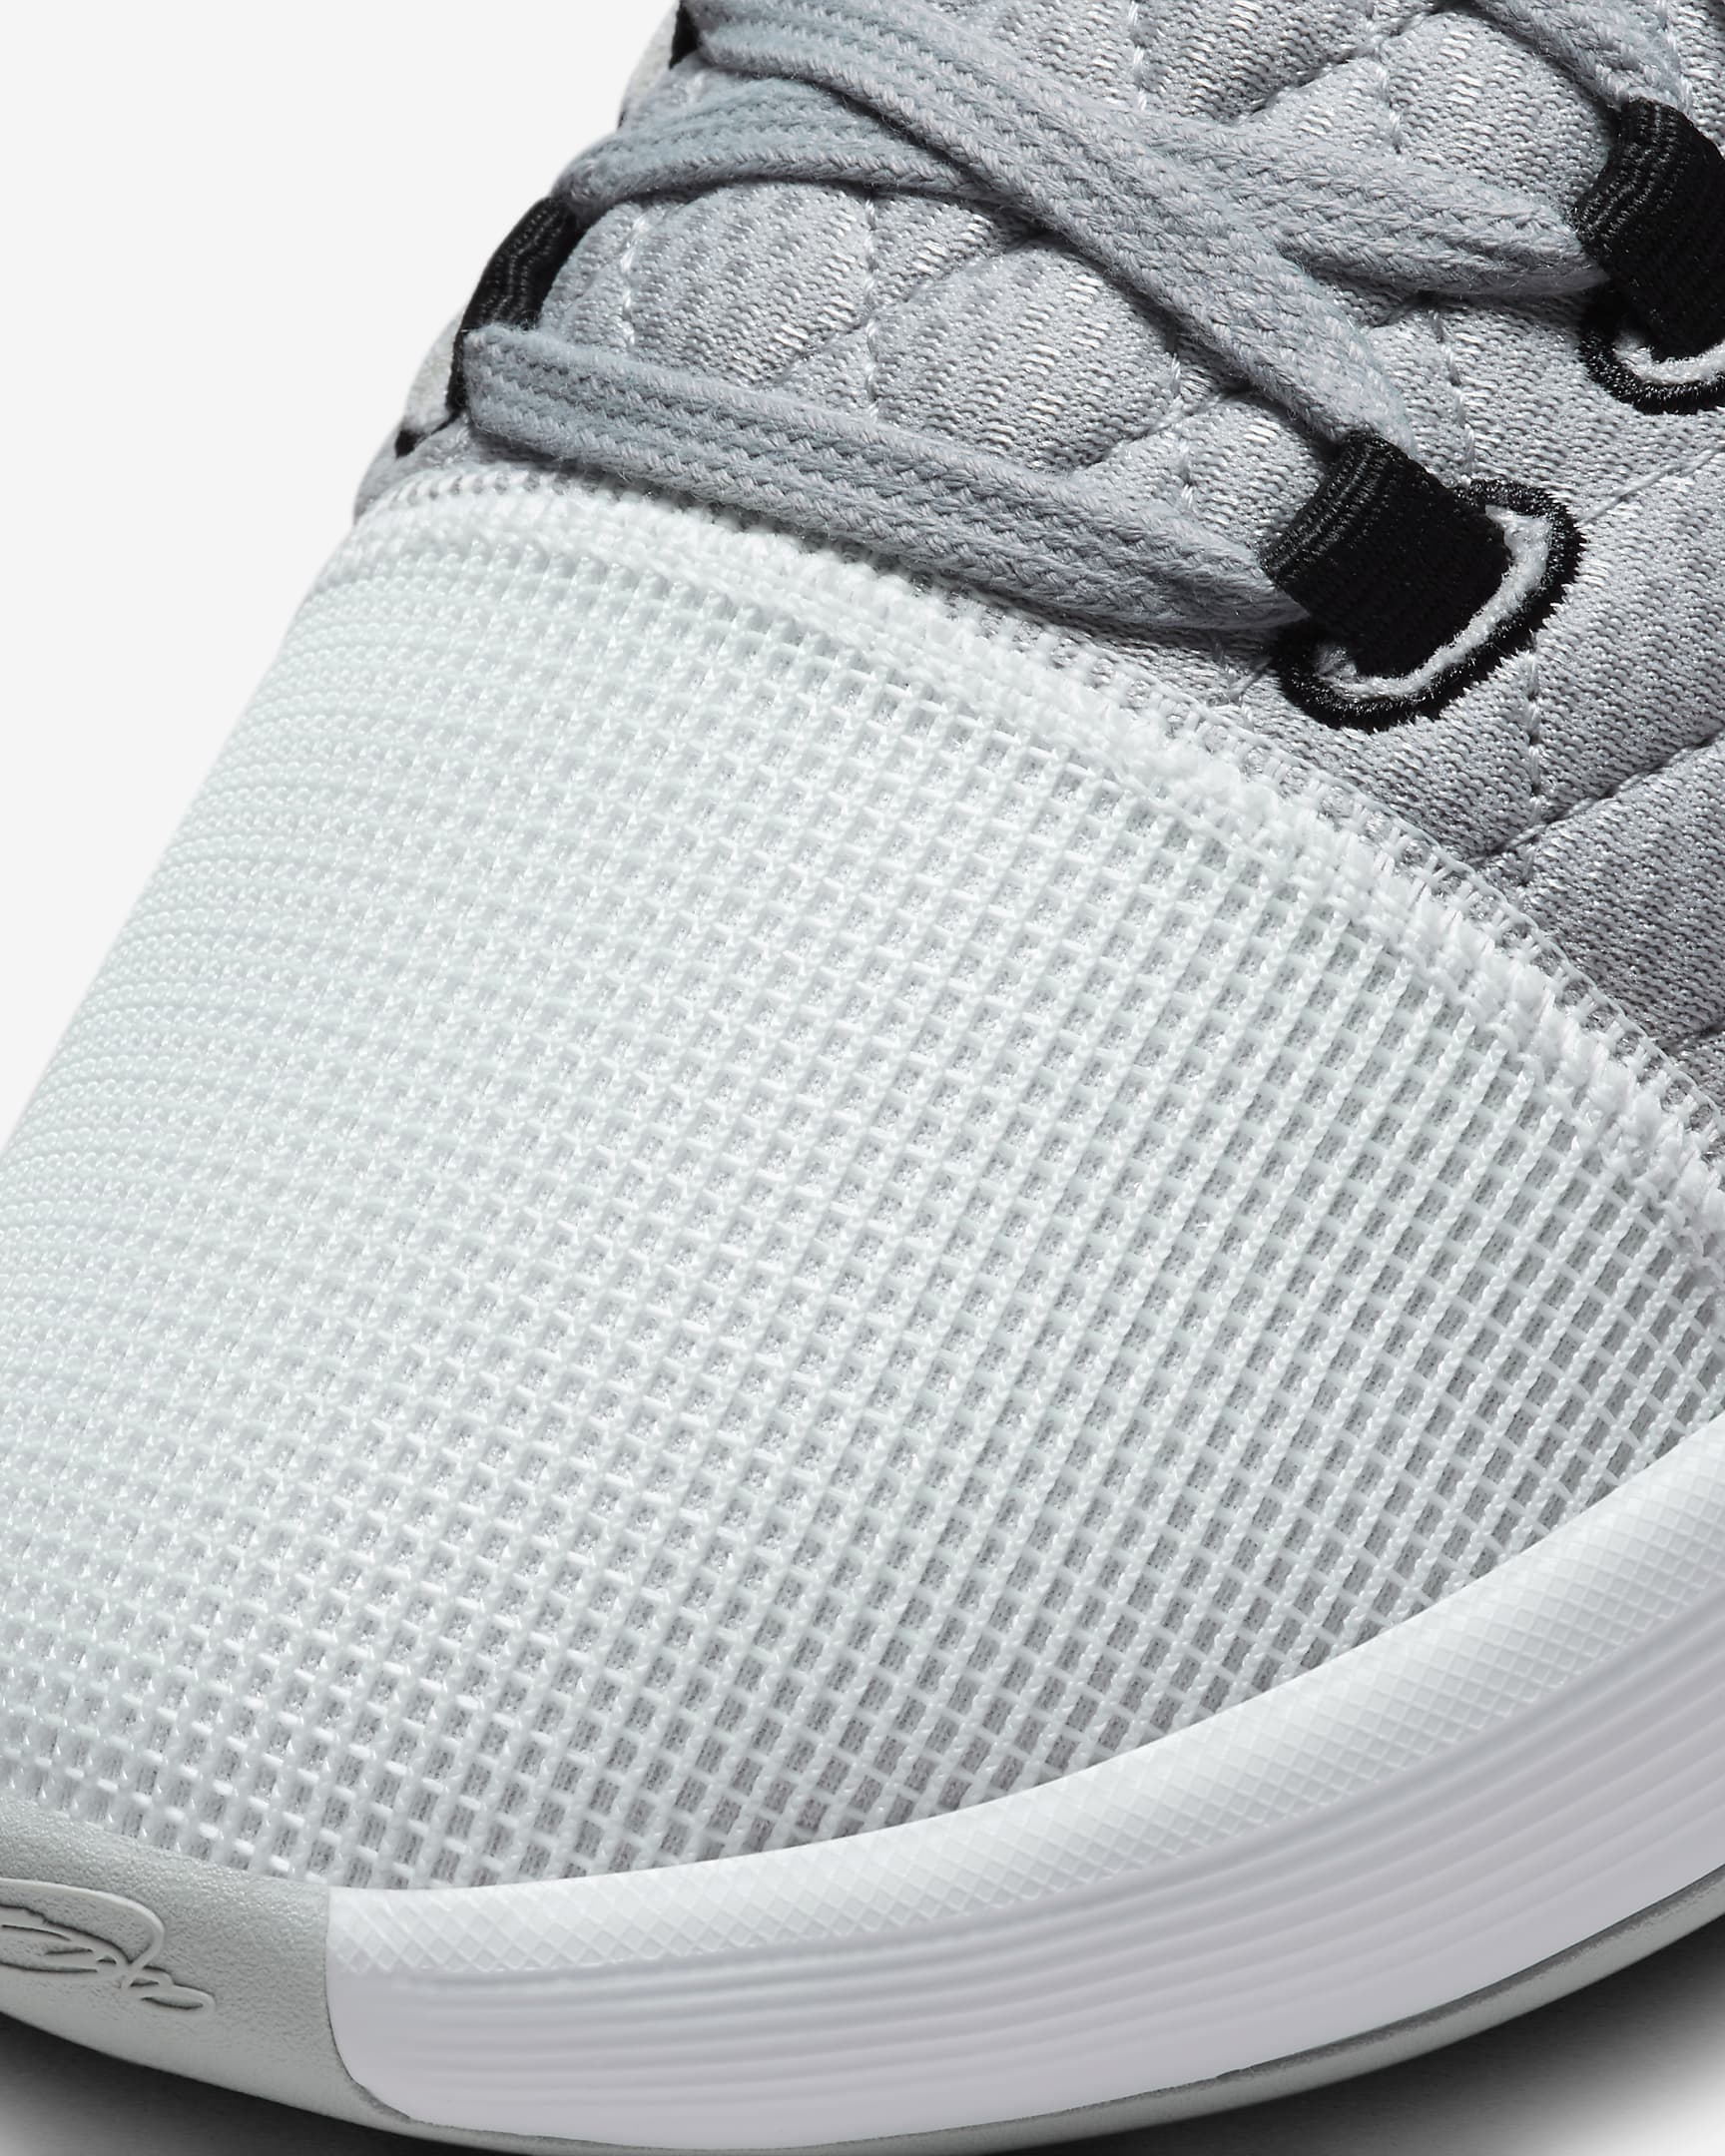 LeBron Witness 8 Basketball Shoes. Nike UK